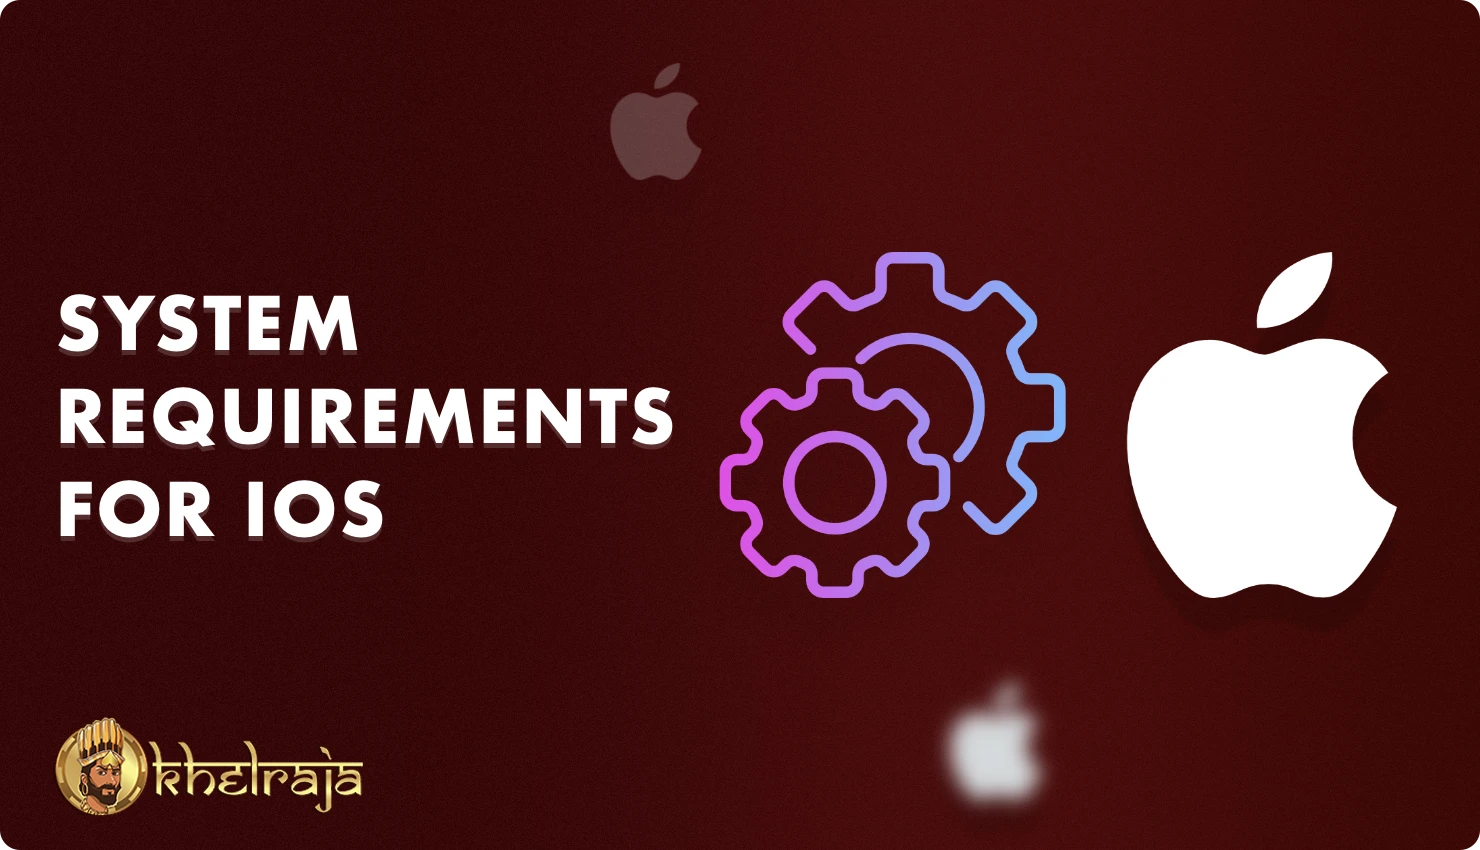 Khelraja ऐप की सिस्टम आवश्यकताएँ इसे पुराने iOS स्मार्टफ़ोन और टैबलेट पर भी इंस्टॉल करने की अनुमति देती हैं